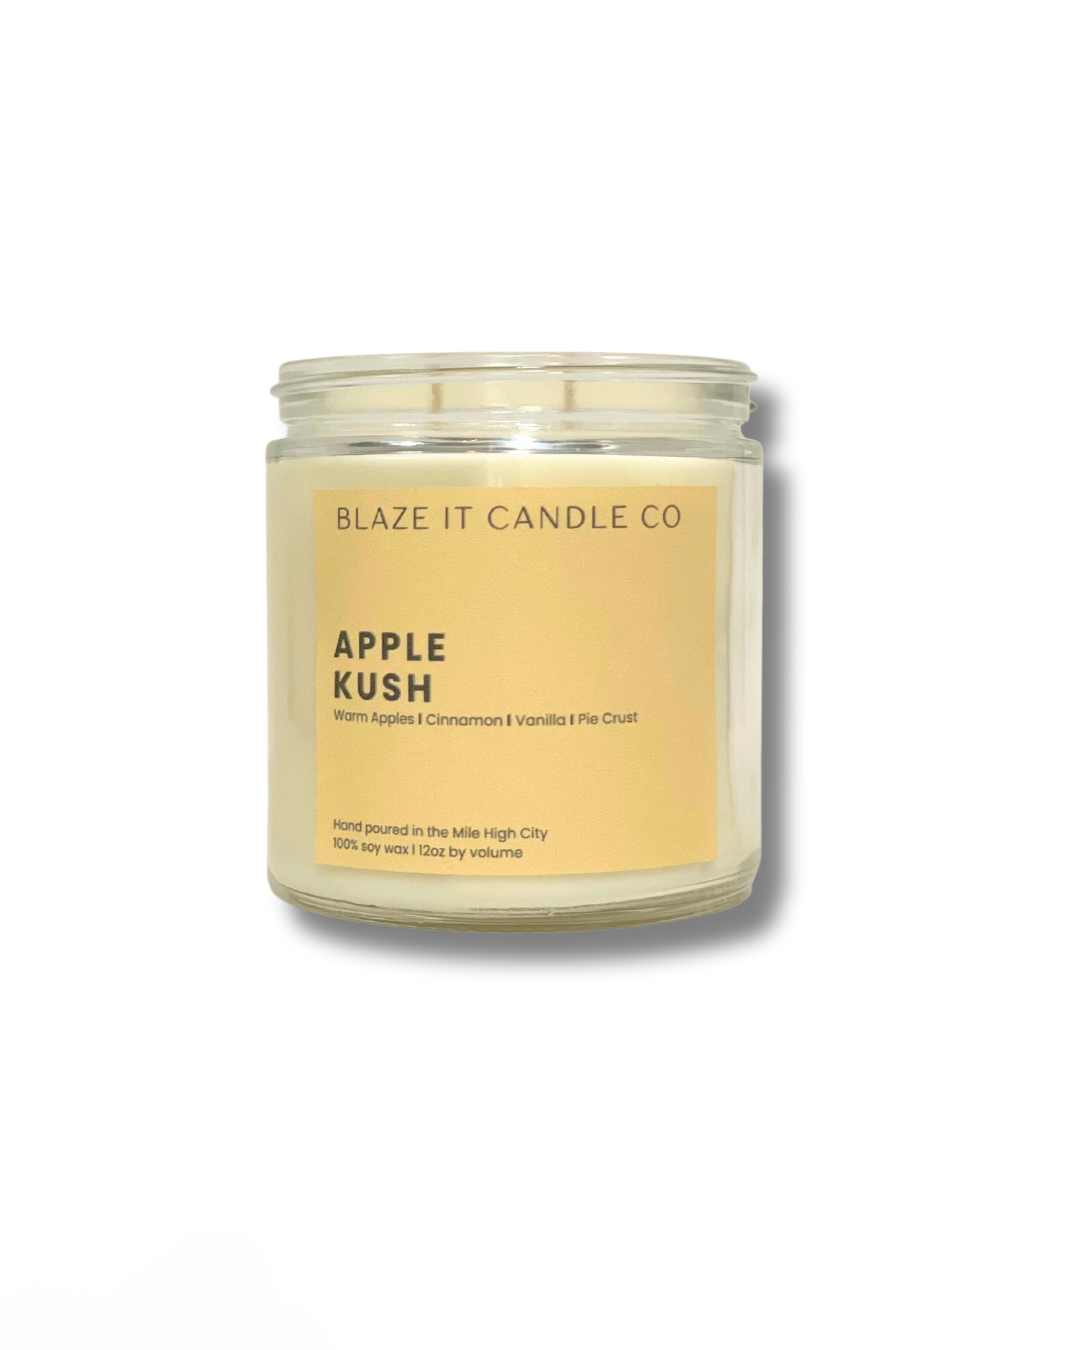 Apple Kush soy candle - Blaze It Candle Co